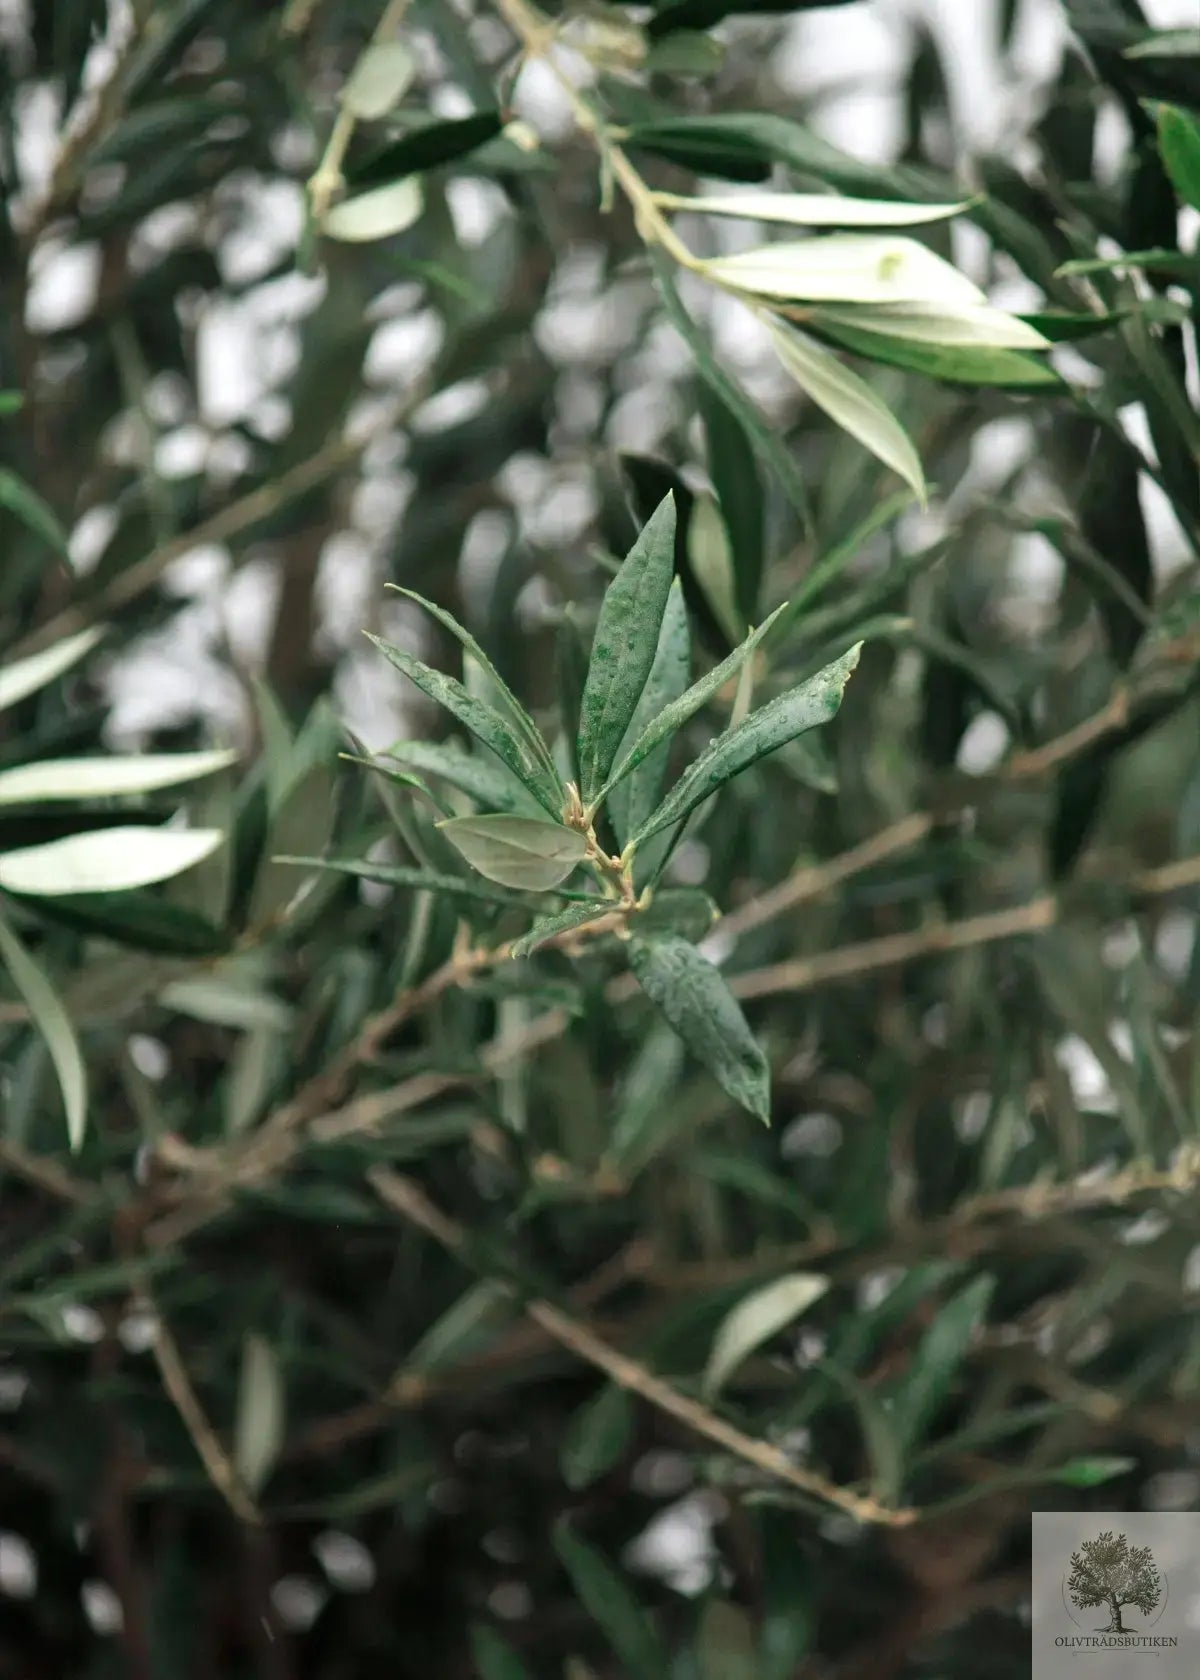 Olivträd 30 år planterat i vintunna Olivträdsbutiken